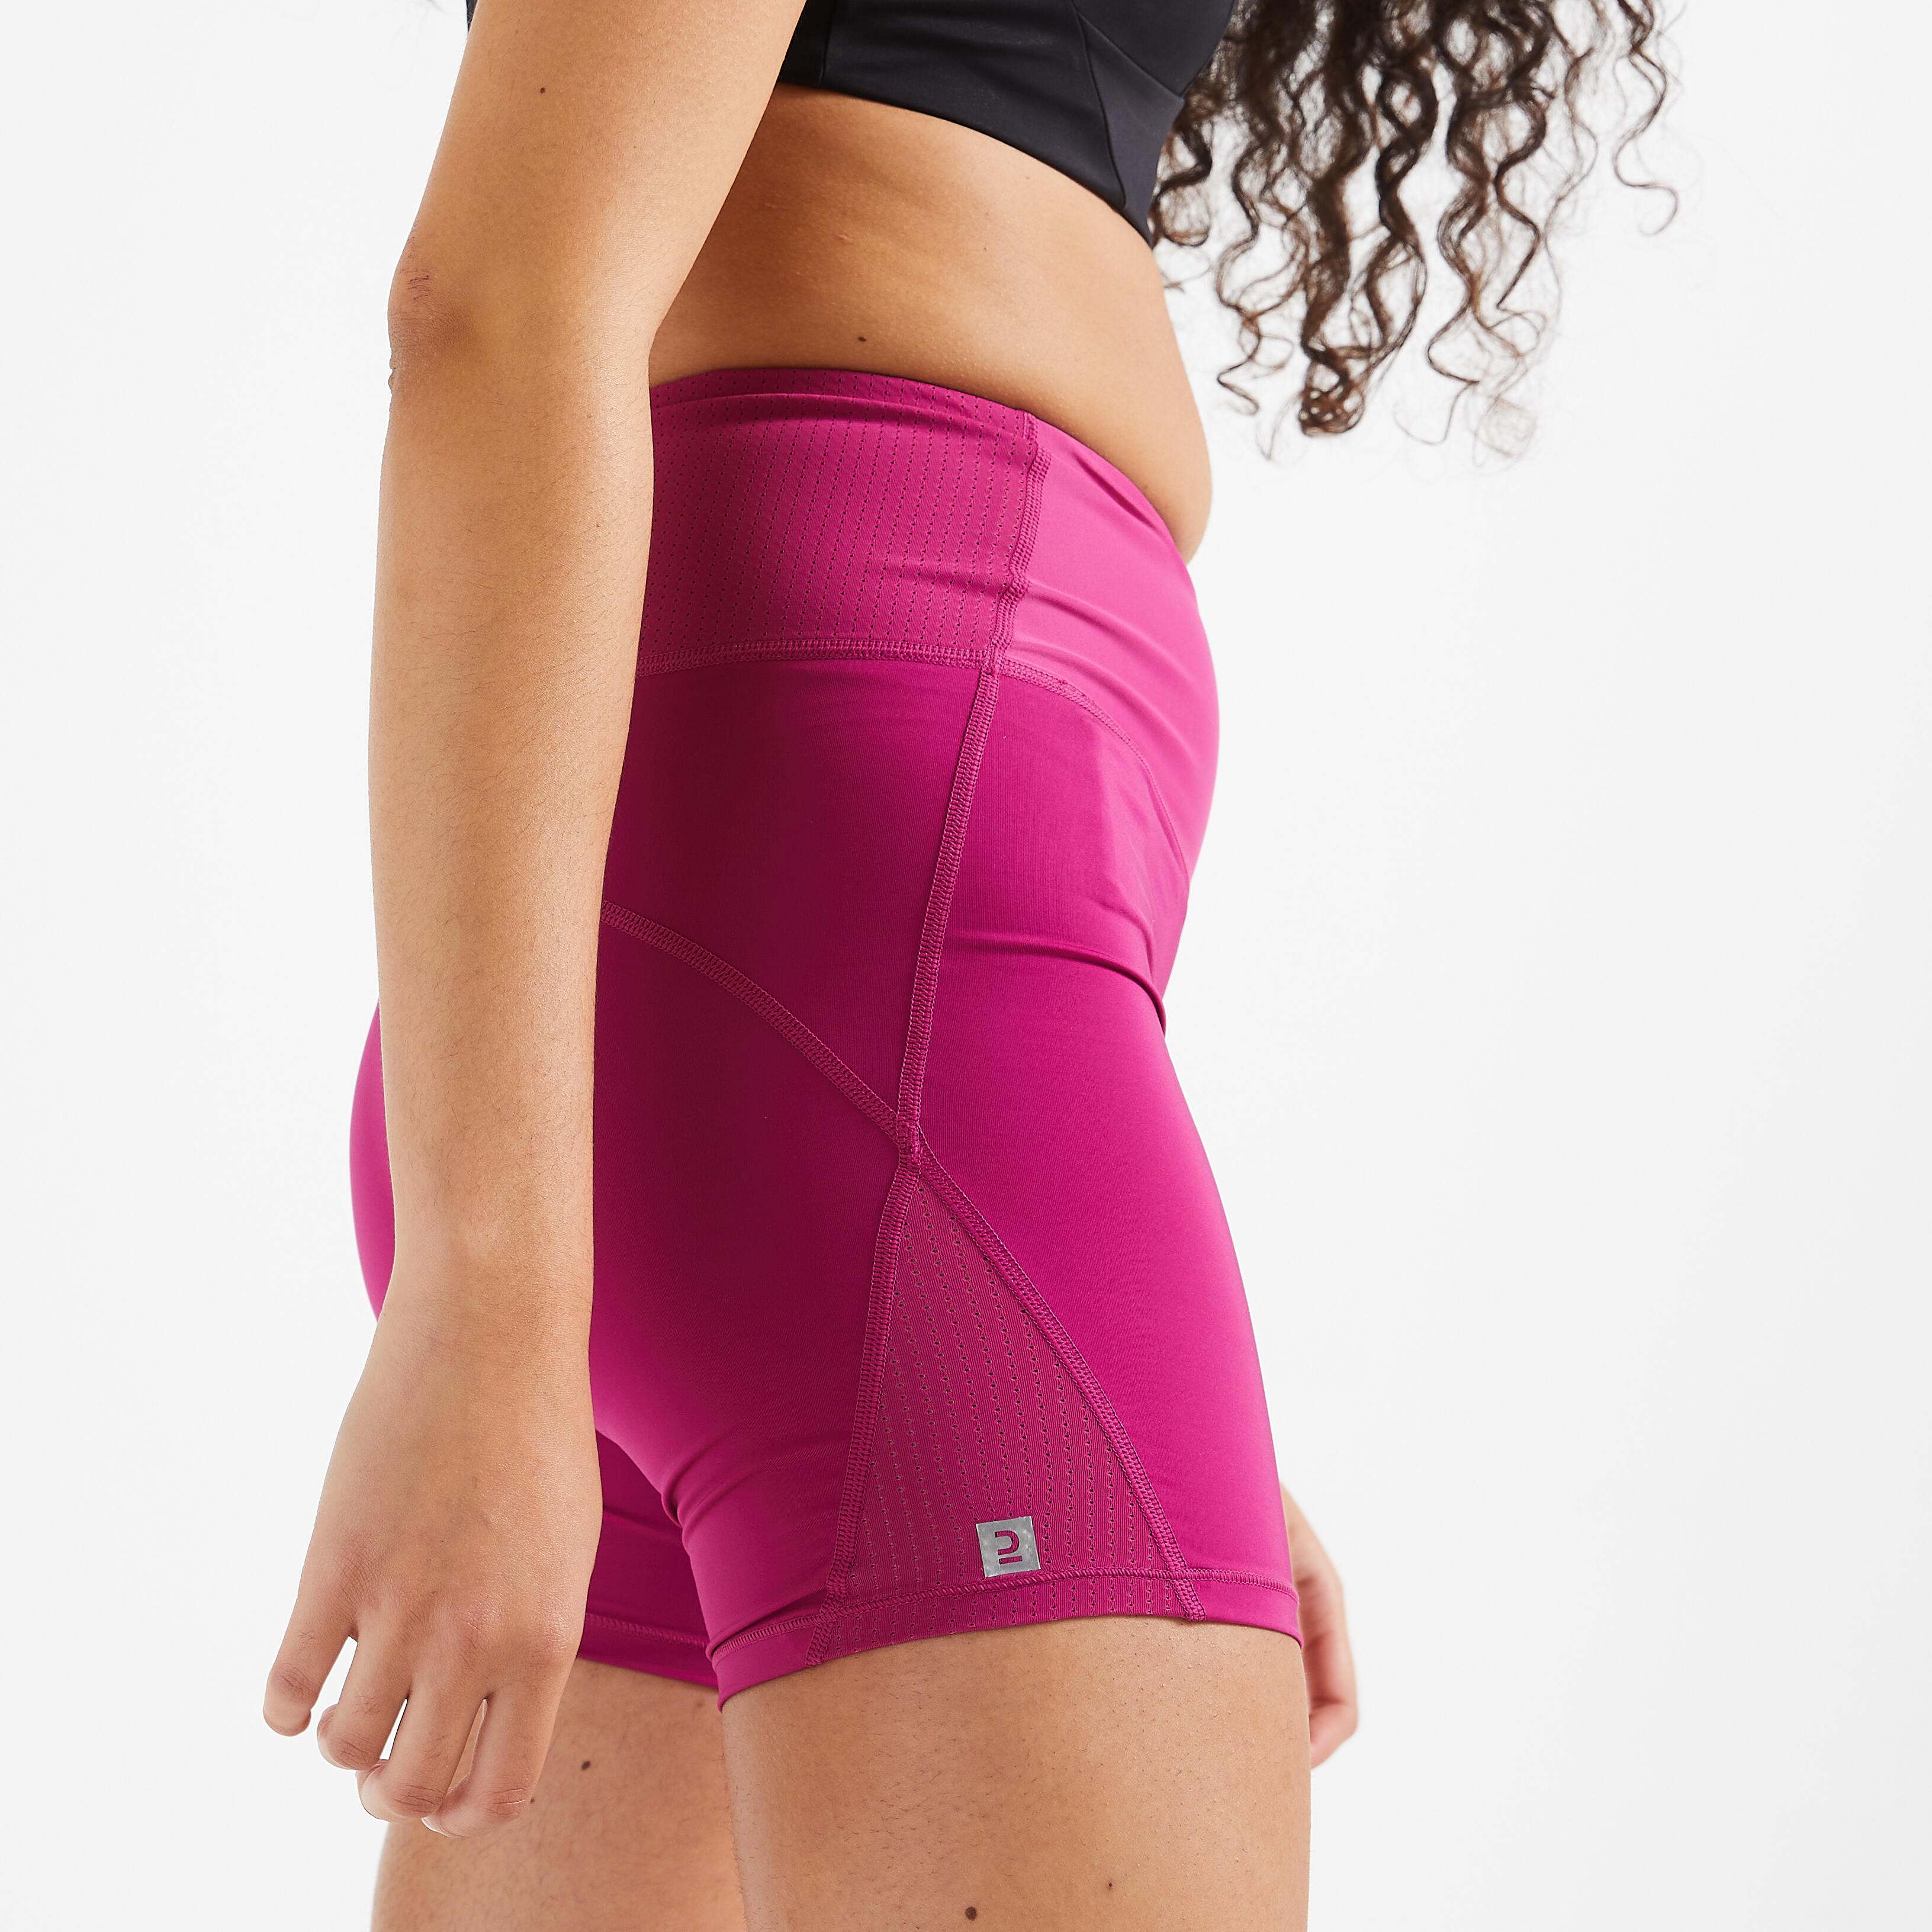 Women Gym Shorts Polyester High Waist FST 500 Pink